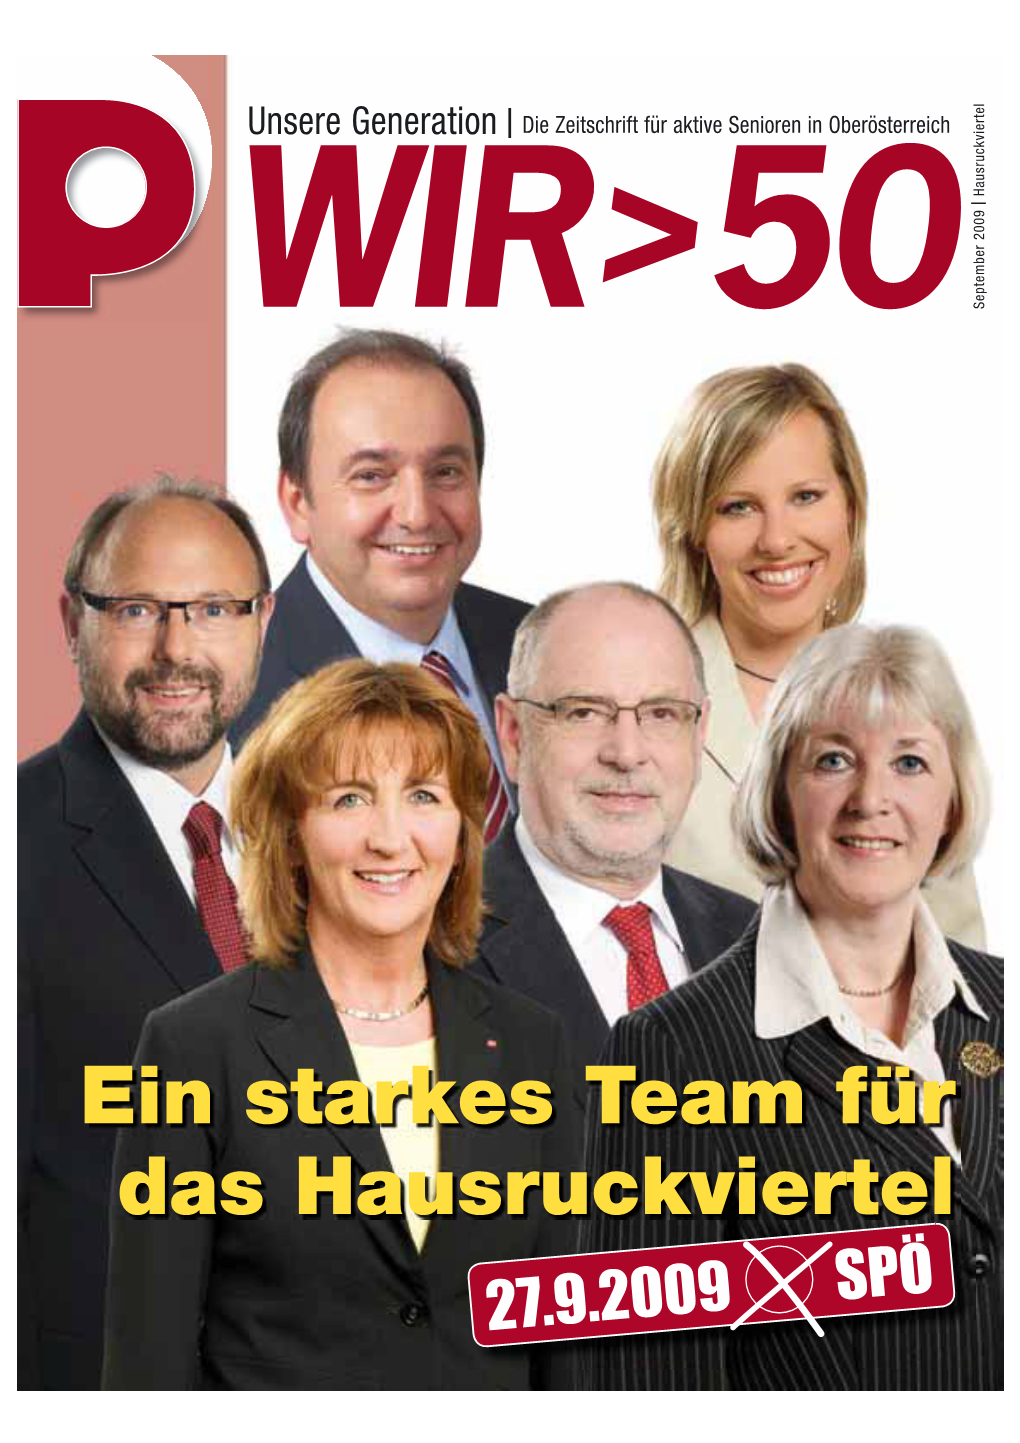 Ein Starkes Team Für Das Hausruckviertel 27.9.2009 SPÖ Oberösterreich Aktuell